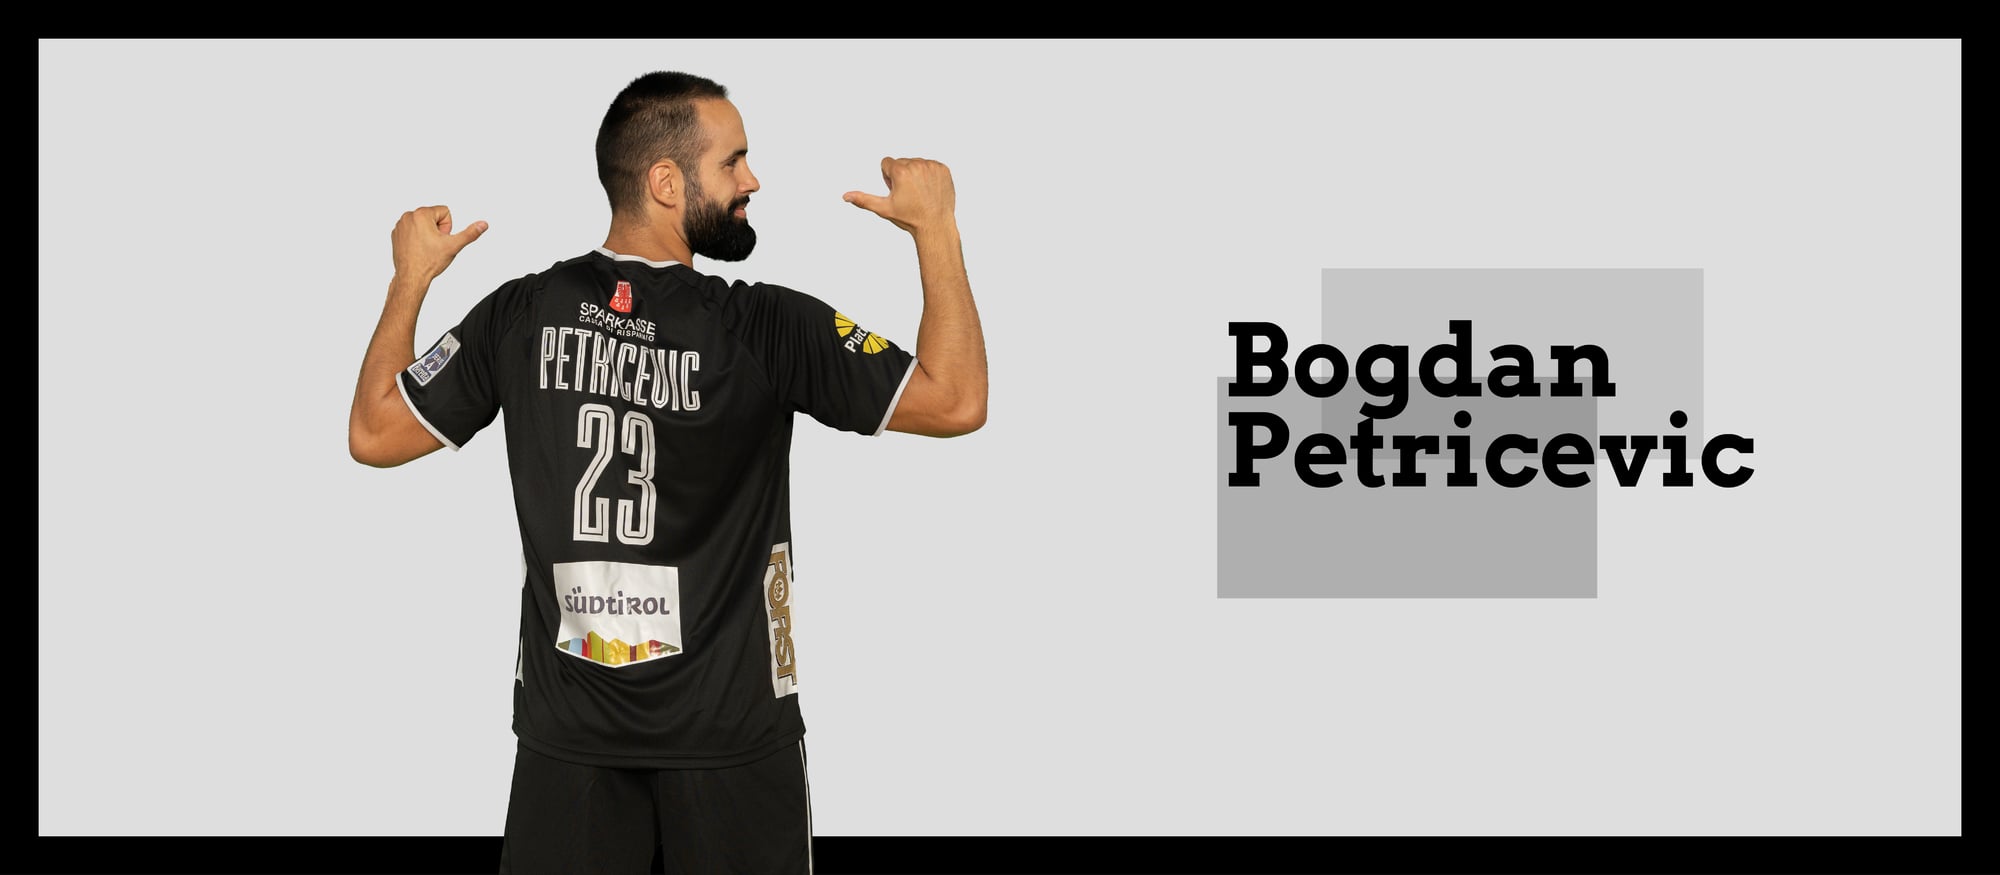 Petricevic Bogdan